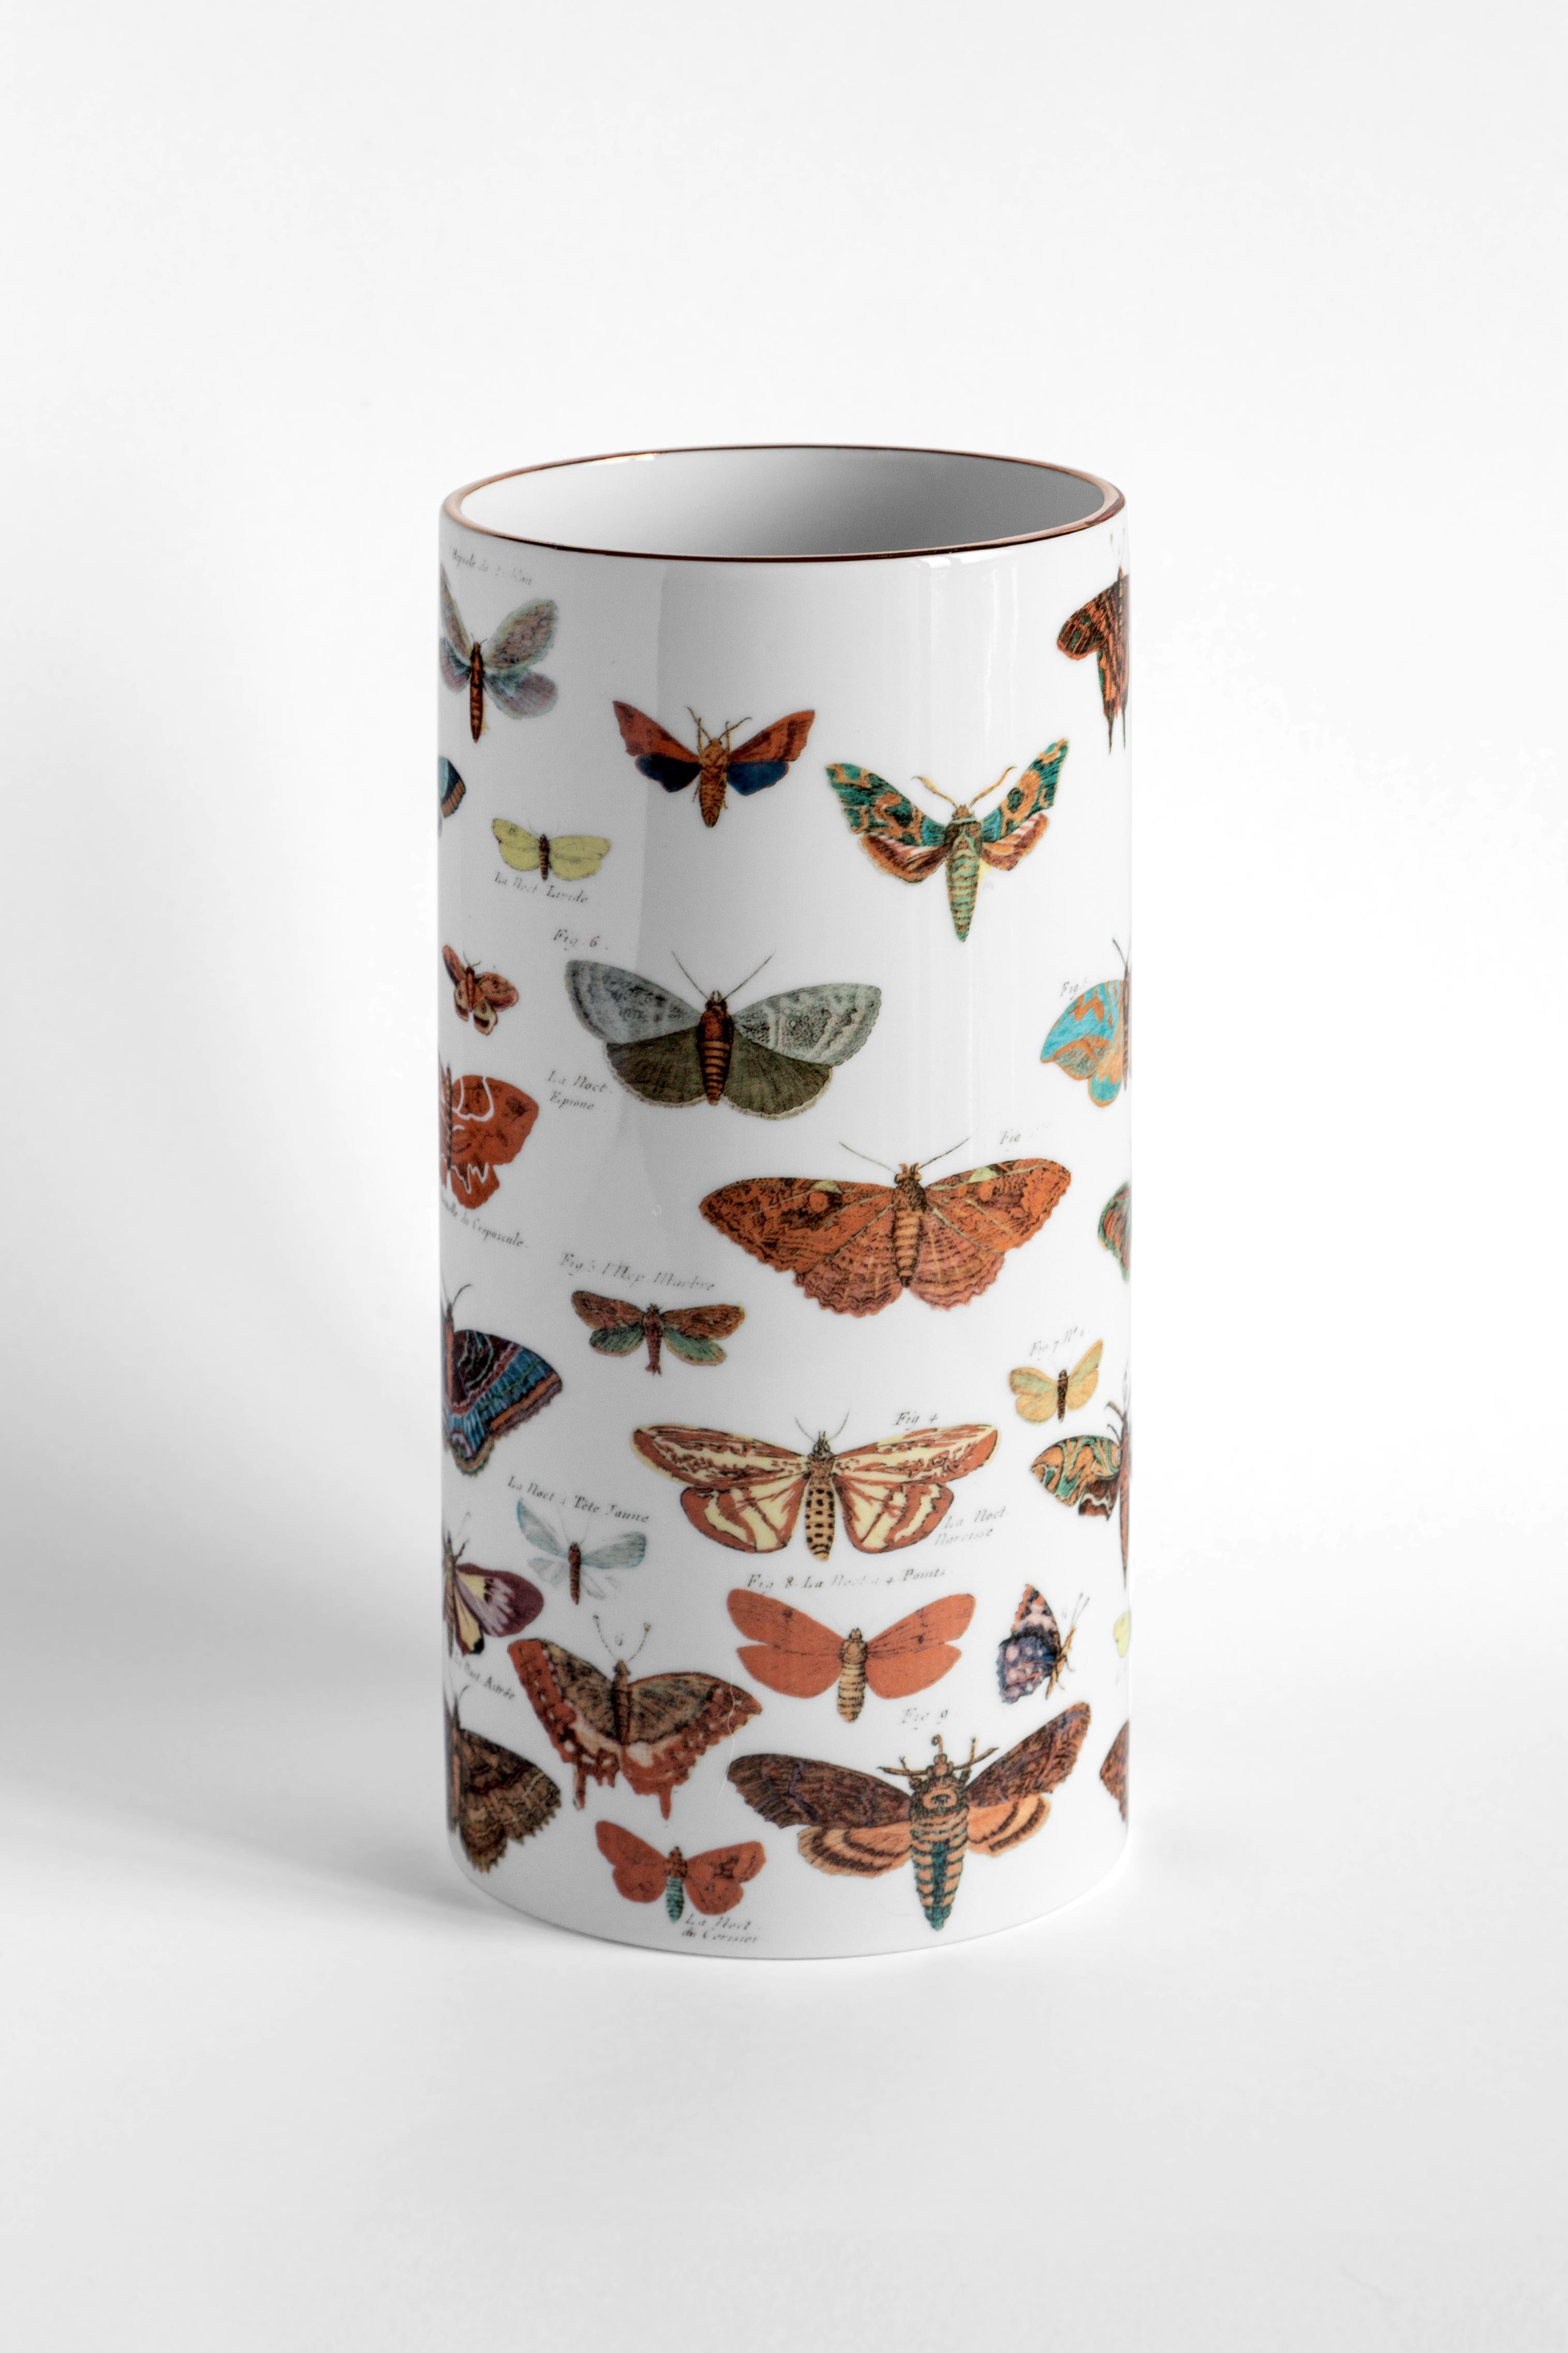 Stellen Sie diese Schmetterlingsvase aus Porzellan alleine auf oder fügen Sie Blumen hinzu, um dem Dekorationselement Leben einzuhauchen. Das Design erinnert an Illustrationen aus einem antiken Lepidopterologie-Buch und macht die Vase zum idealen